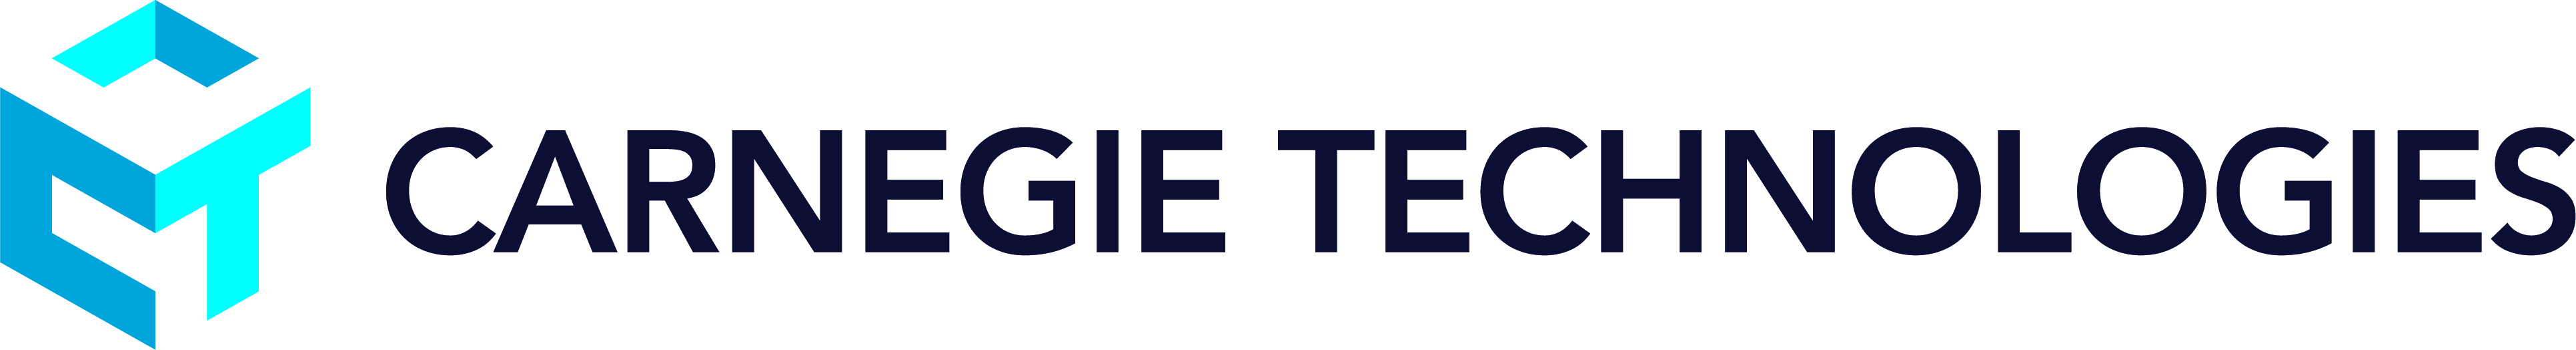 CarnegieTech_Logo_Horizontal.jpg